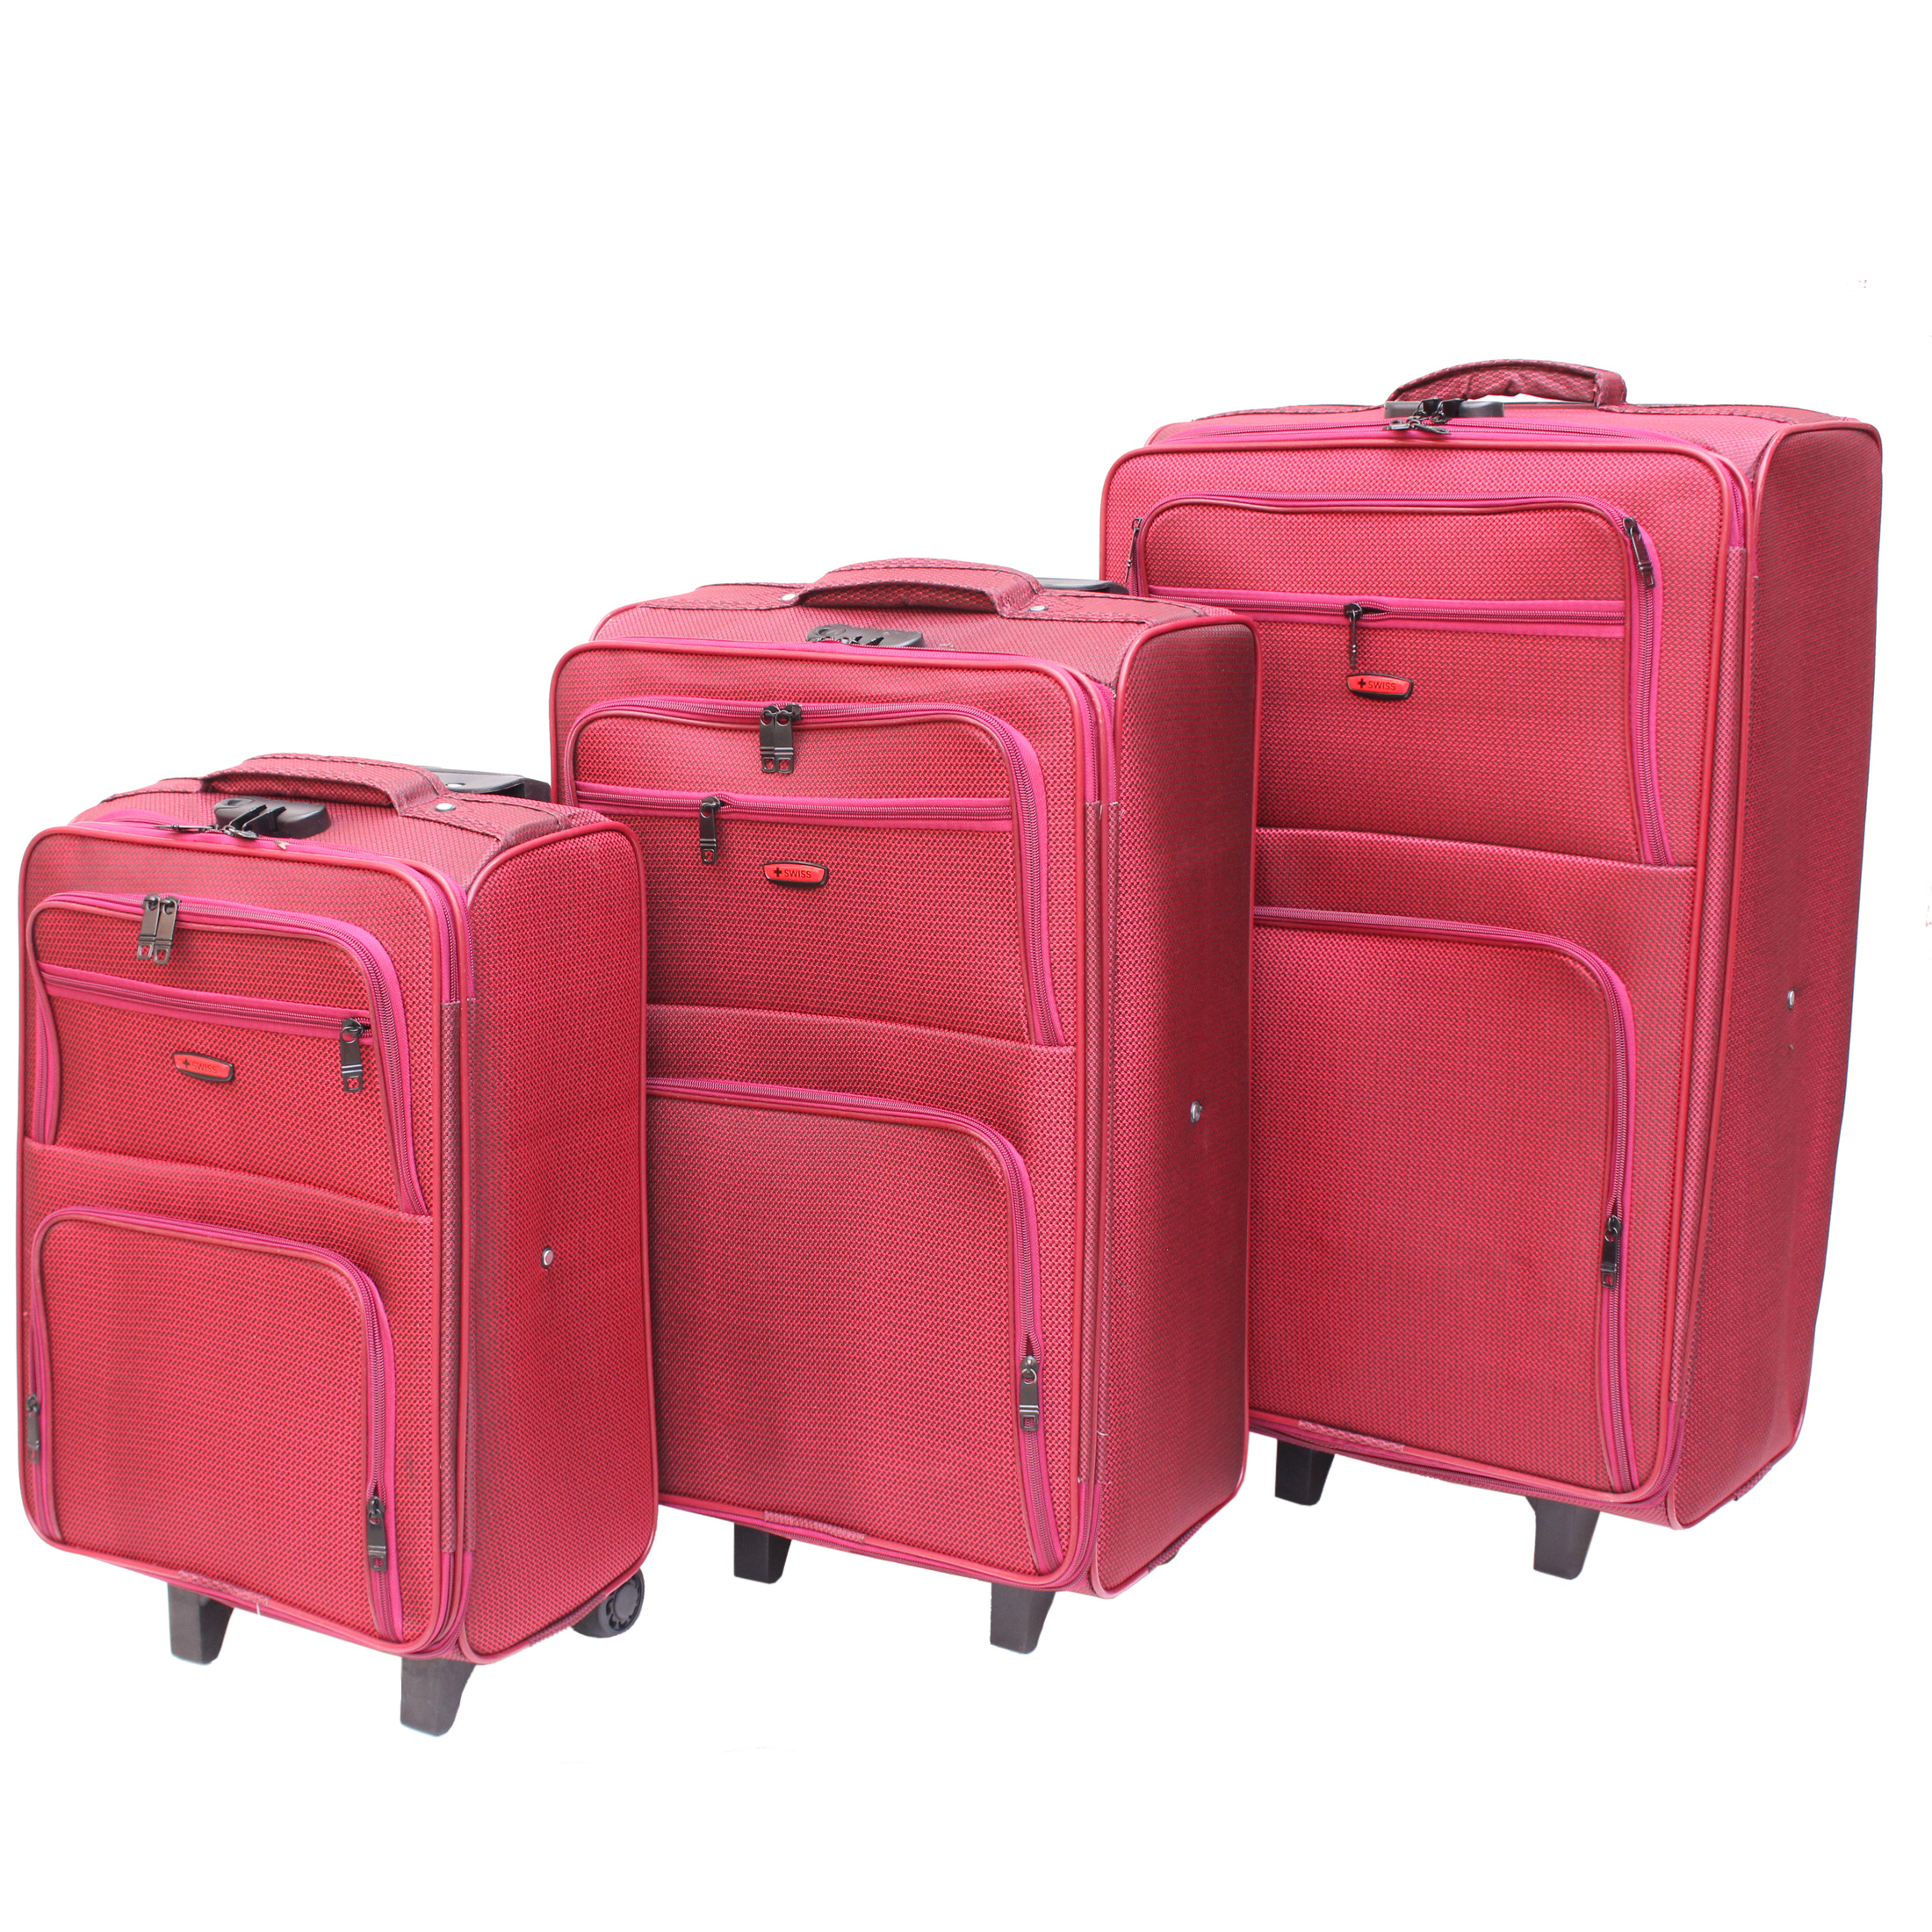 مجموعه سه عددی چمدان مدل Sw کد 01